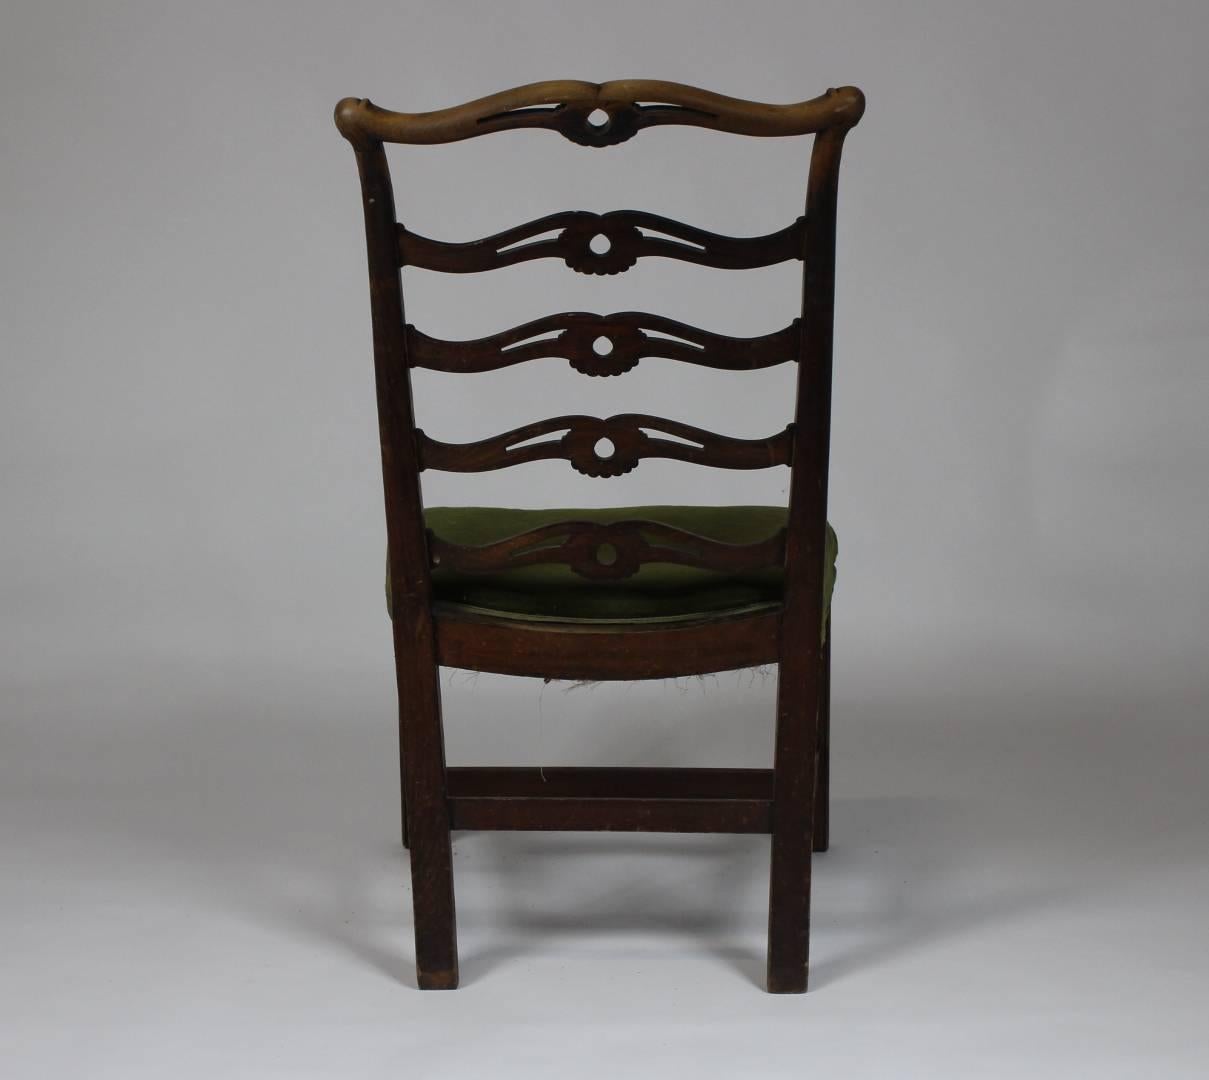 Jugendstil Adolf Loos Dining Room Chair